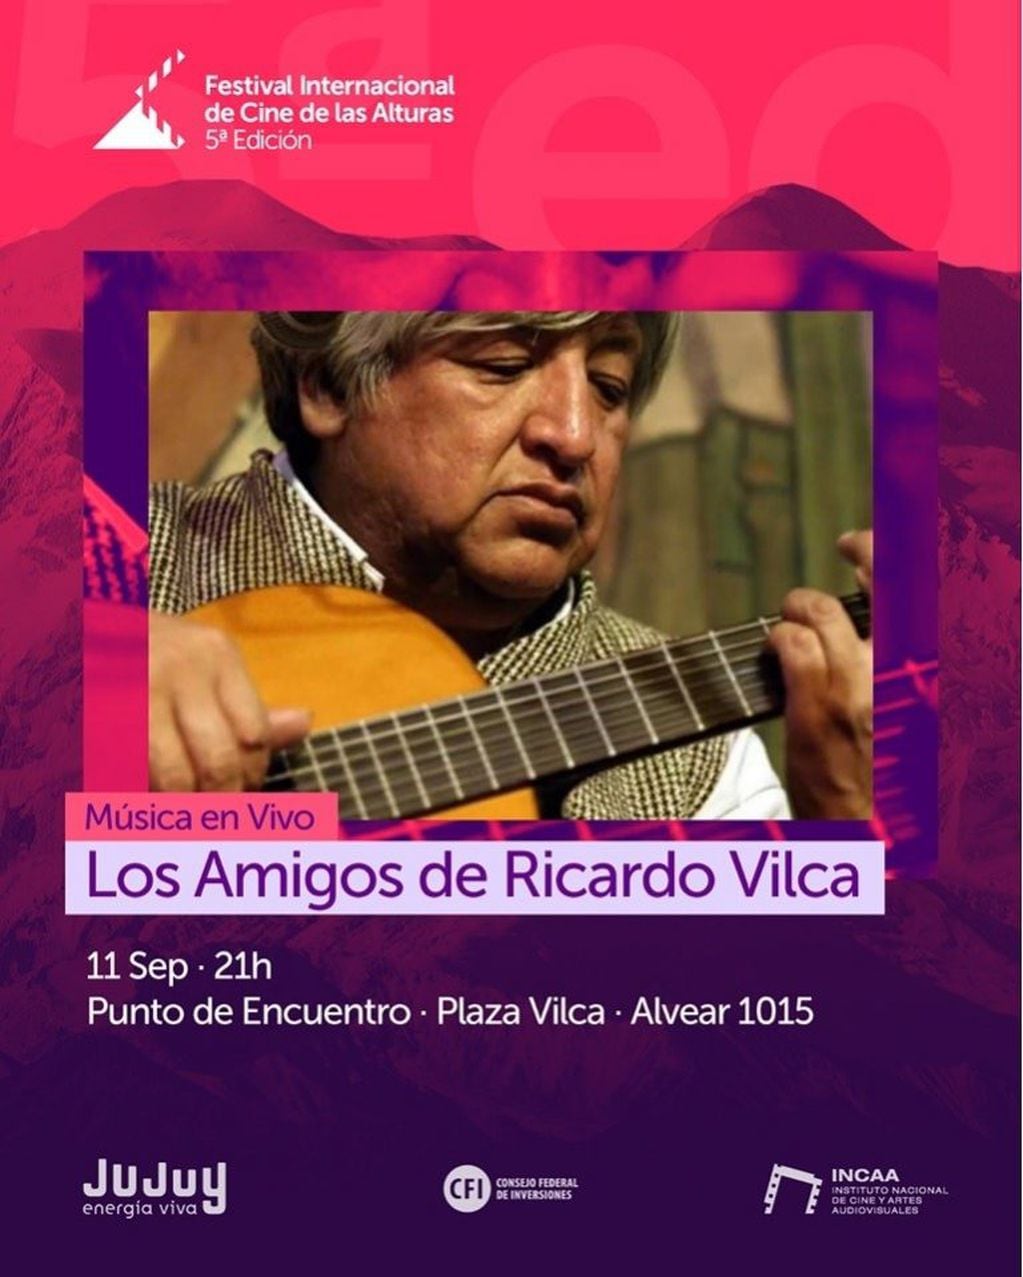 El miércoles 11 el público podrá disfrutar de la música en vivo de Los Amigos de Ricardo Vilca en Punto de encuentro Plaza Vilca, en calle Alvear 1015.